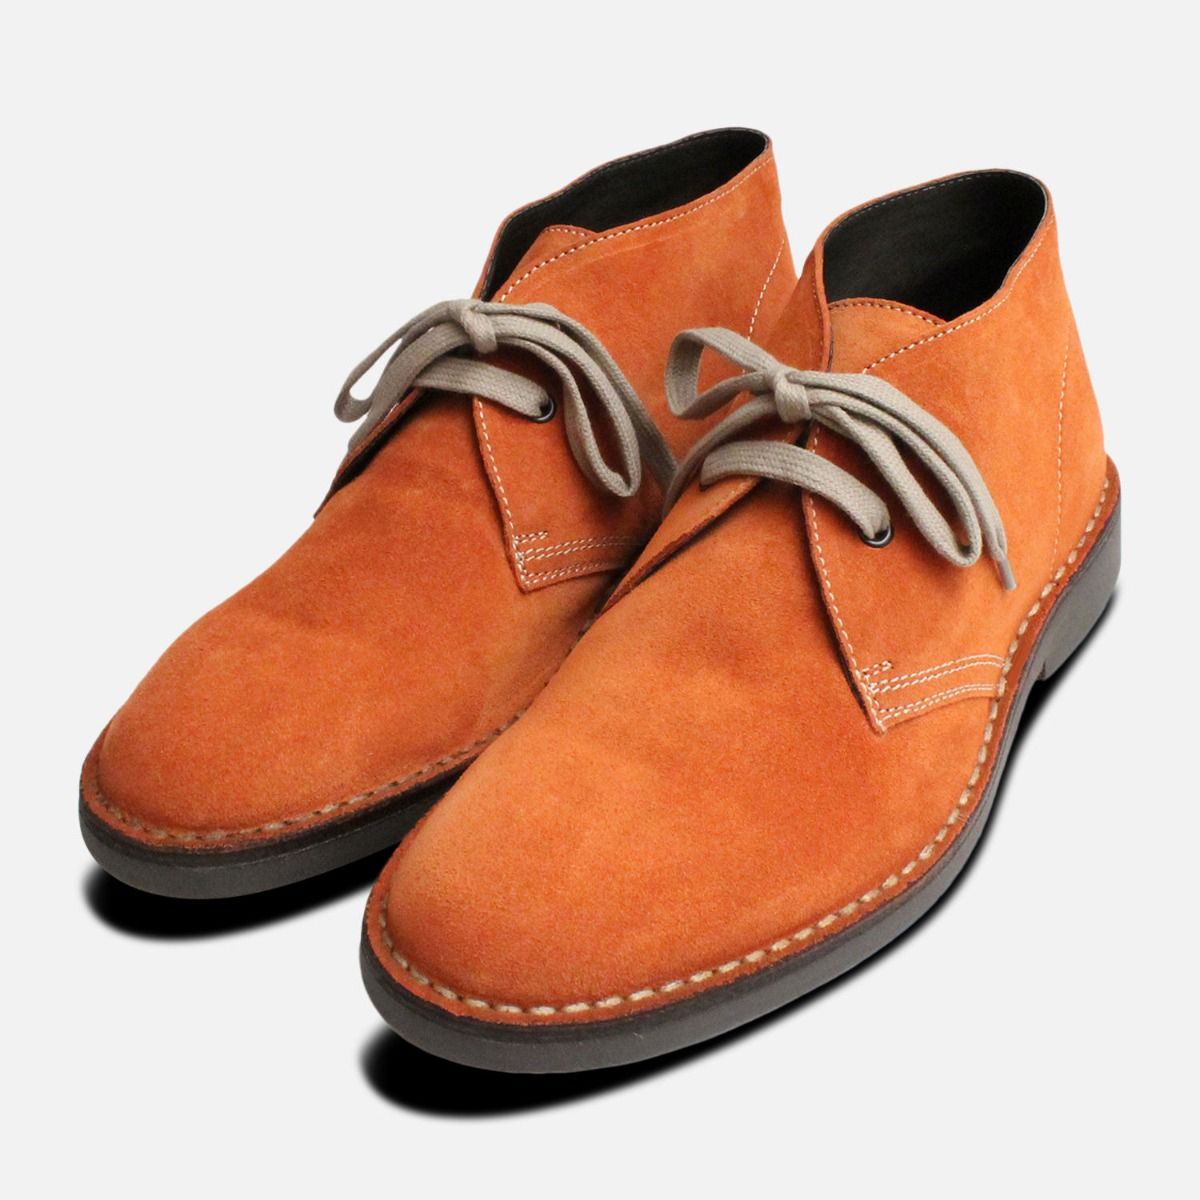 orange fur boots